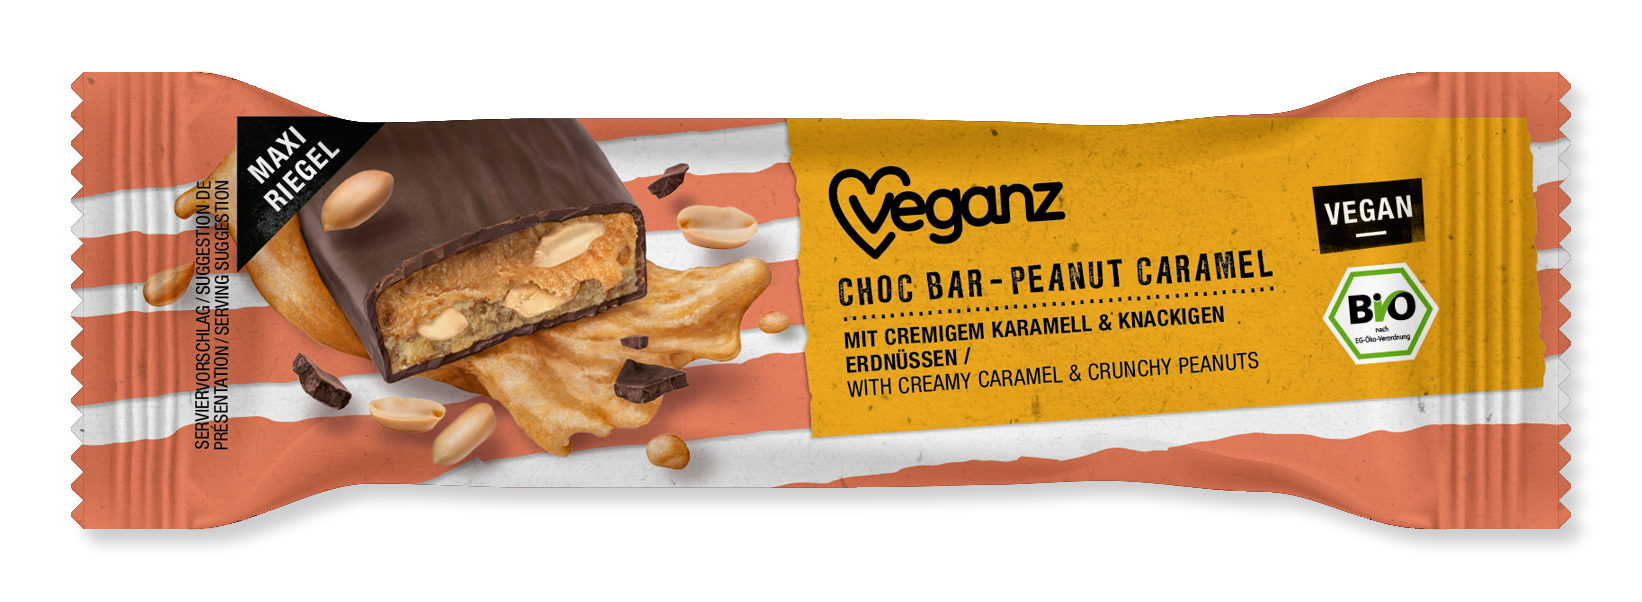 2022-02-18-veg-chocbar-caramel-peanut-mockup.png